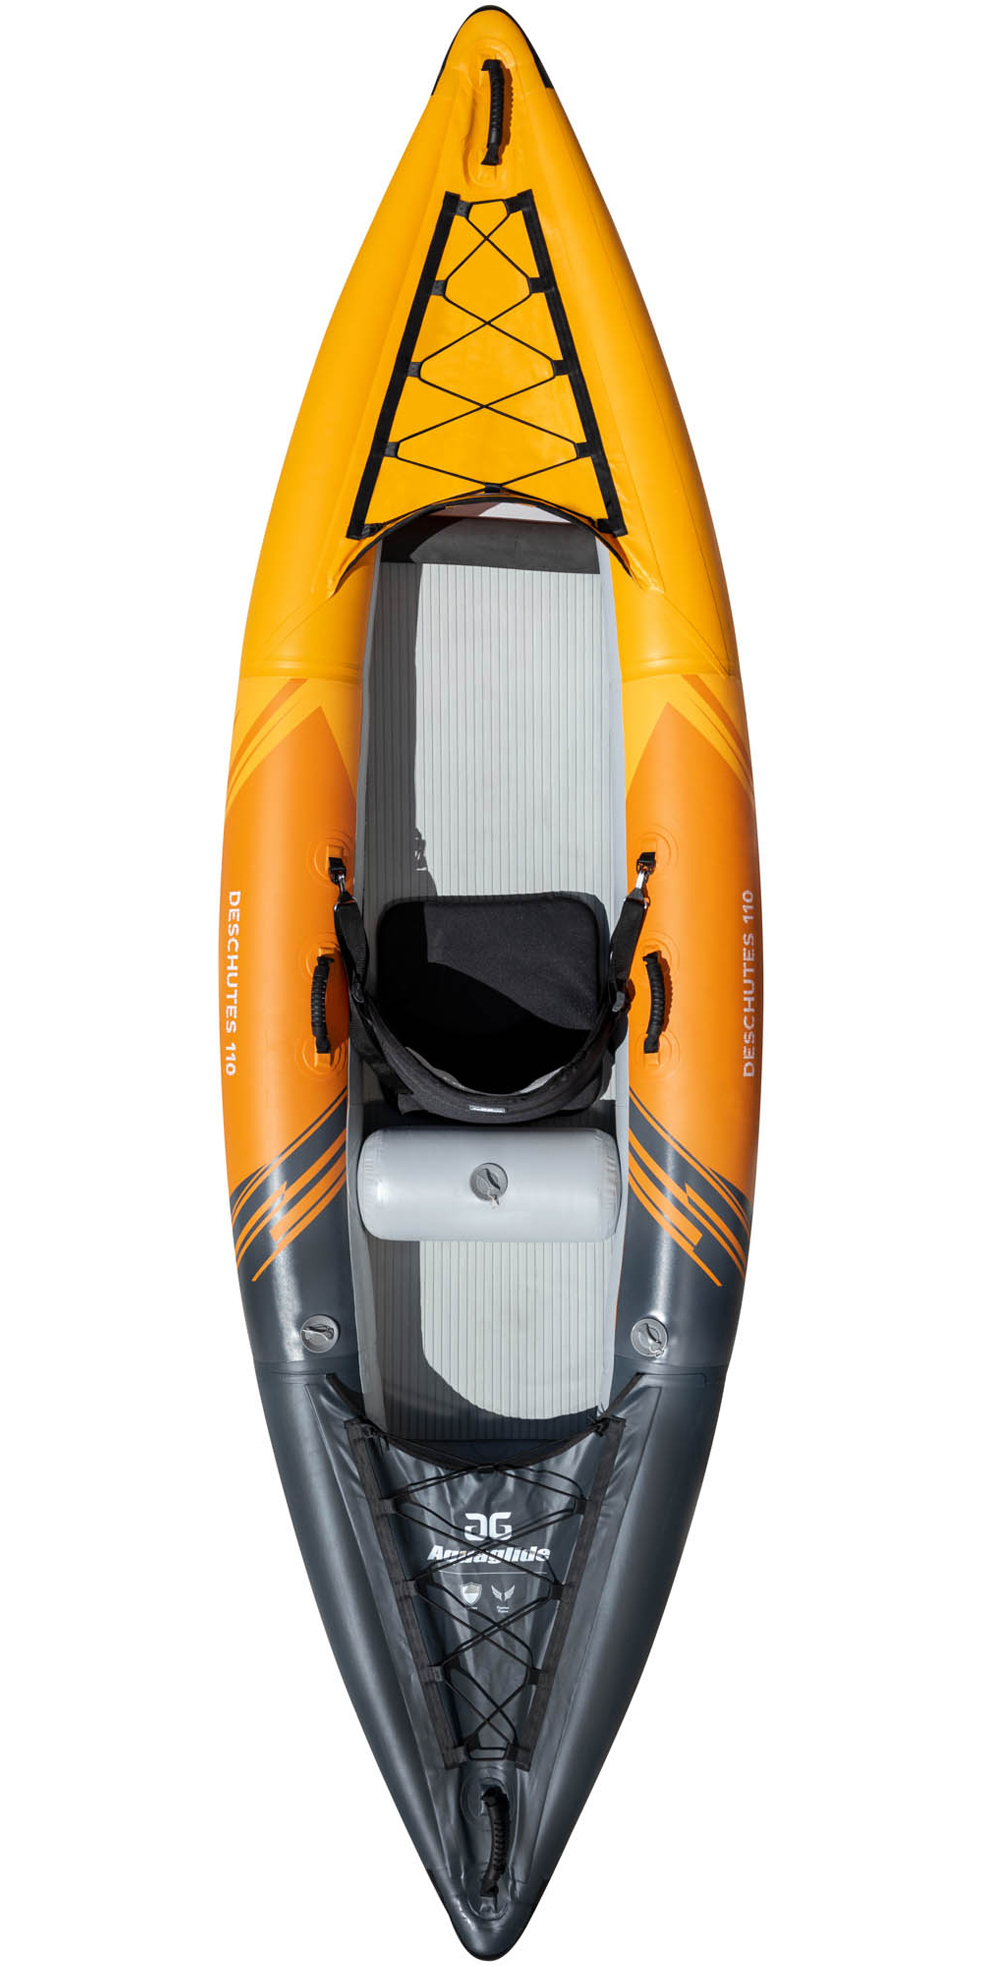 2022 Aquaglide 110 1 Mand Kajak - Kajak - 584120125 - Kayak & Padler - Kayak | Watersports Outlet